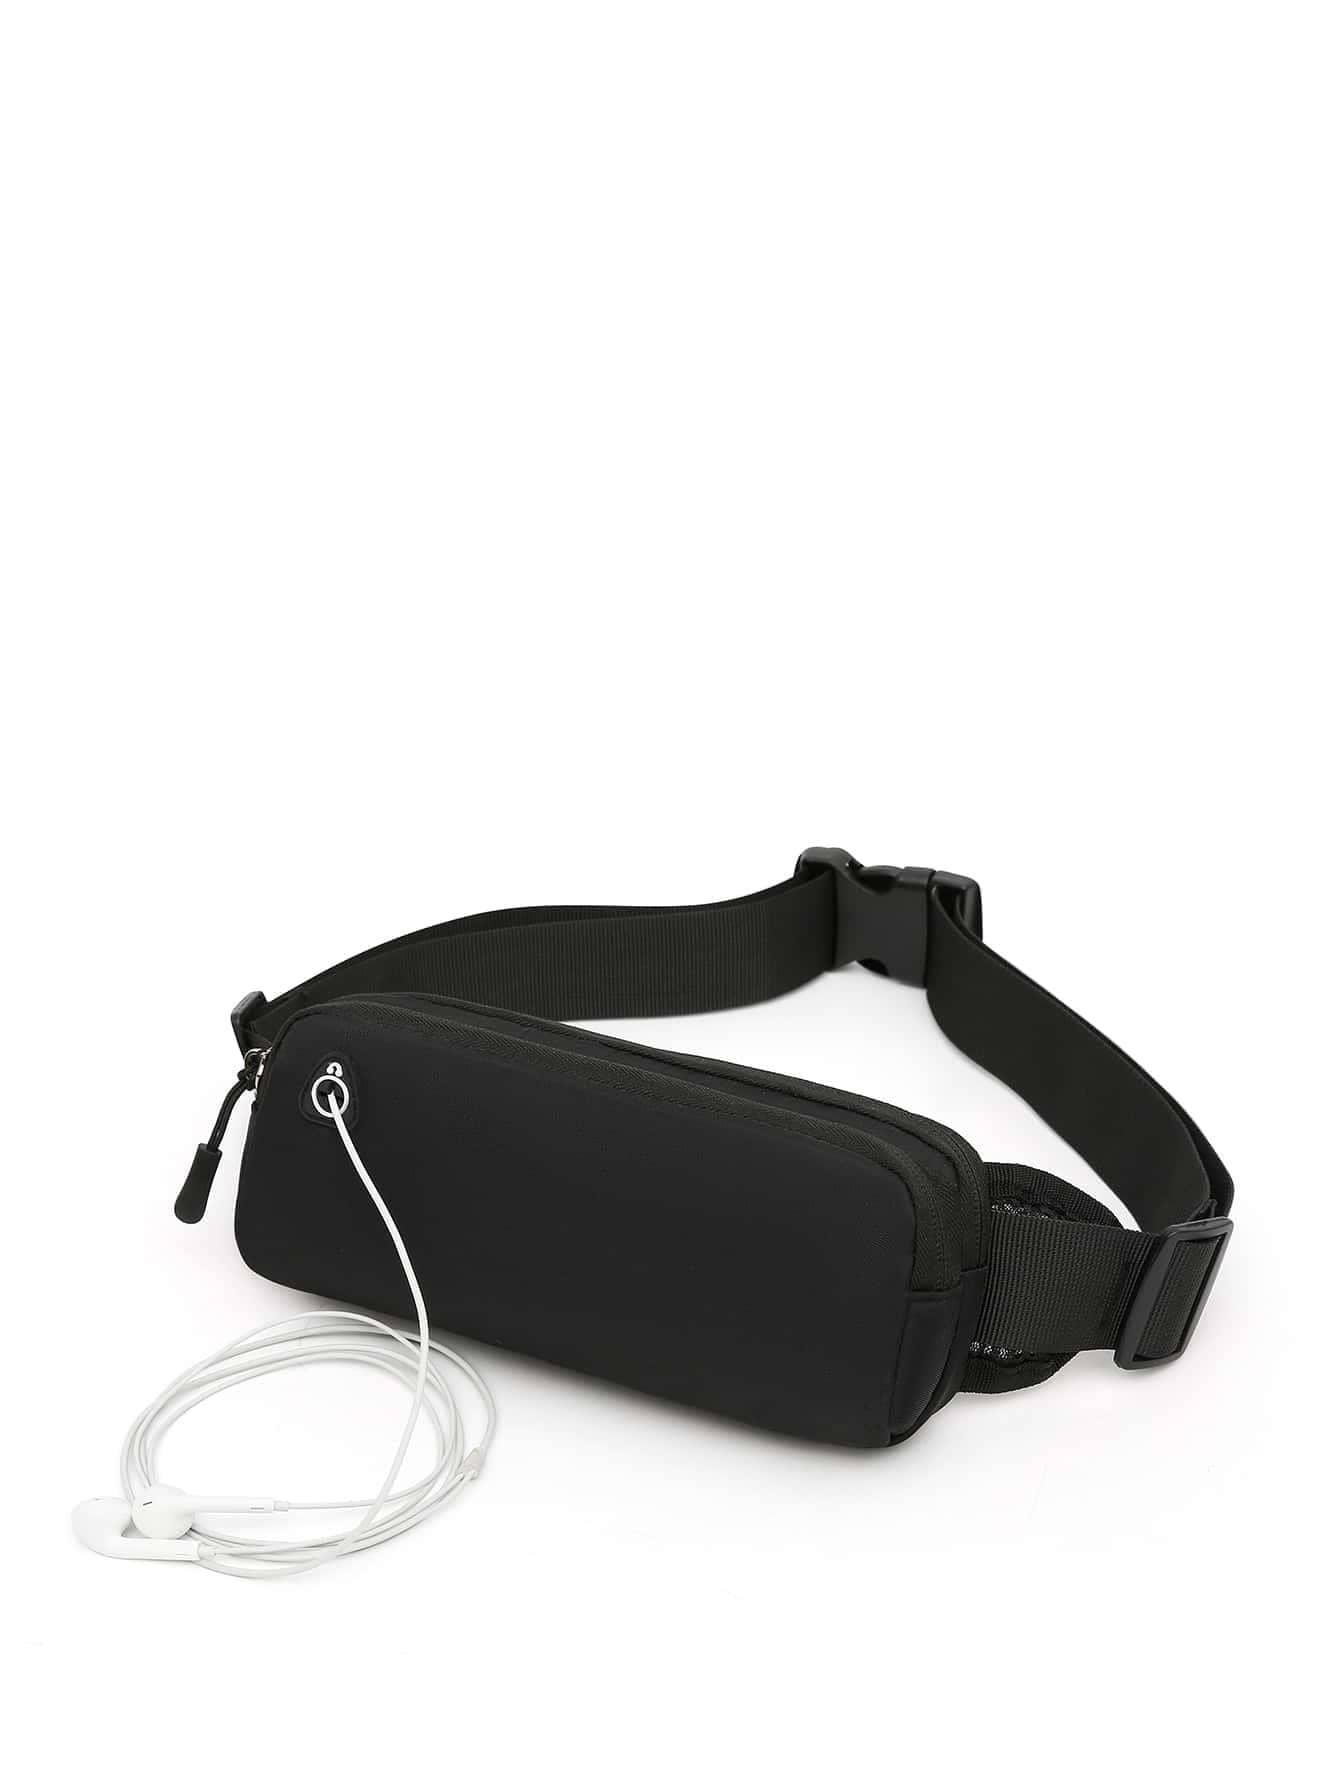 1 шт. поясная сумка поясная сумка для бега спортивная портативная спортивная сумка велосипедный телефон женский беговой пояс, черный